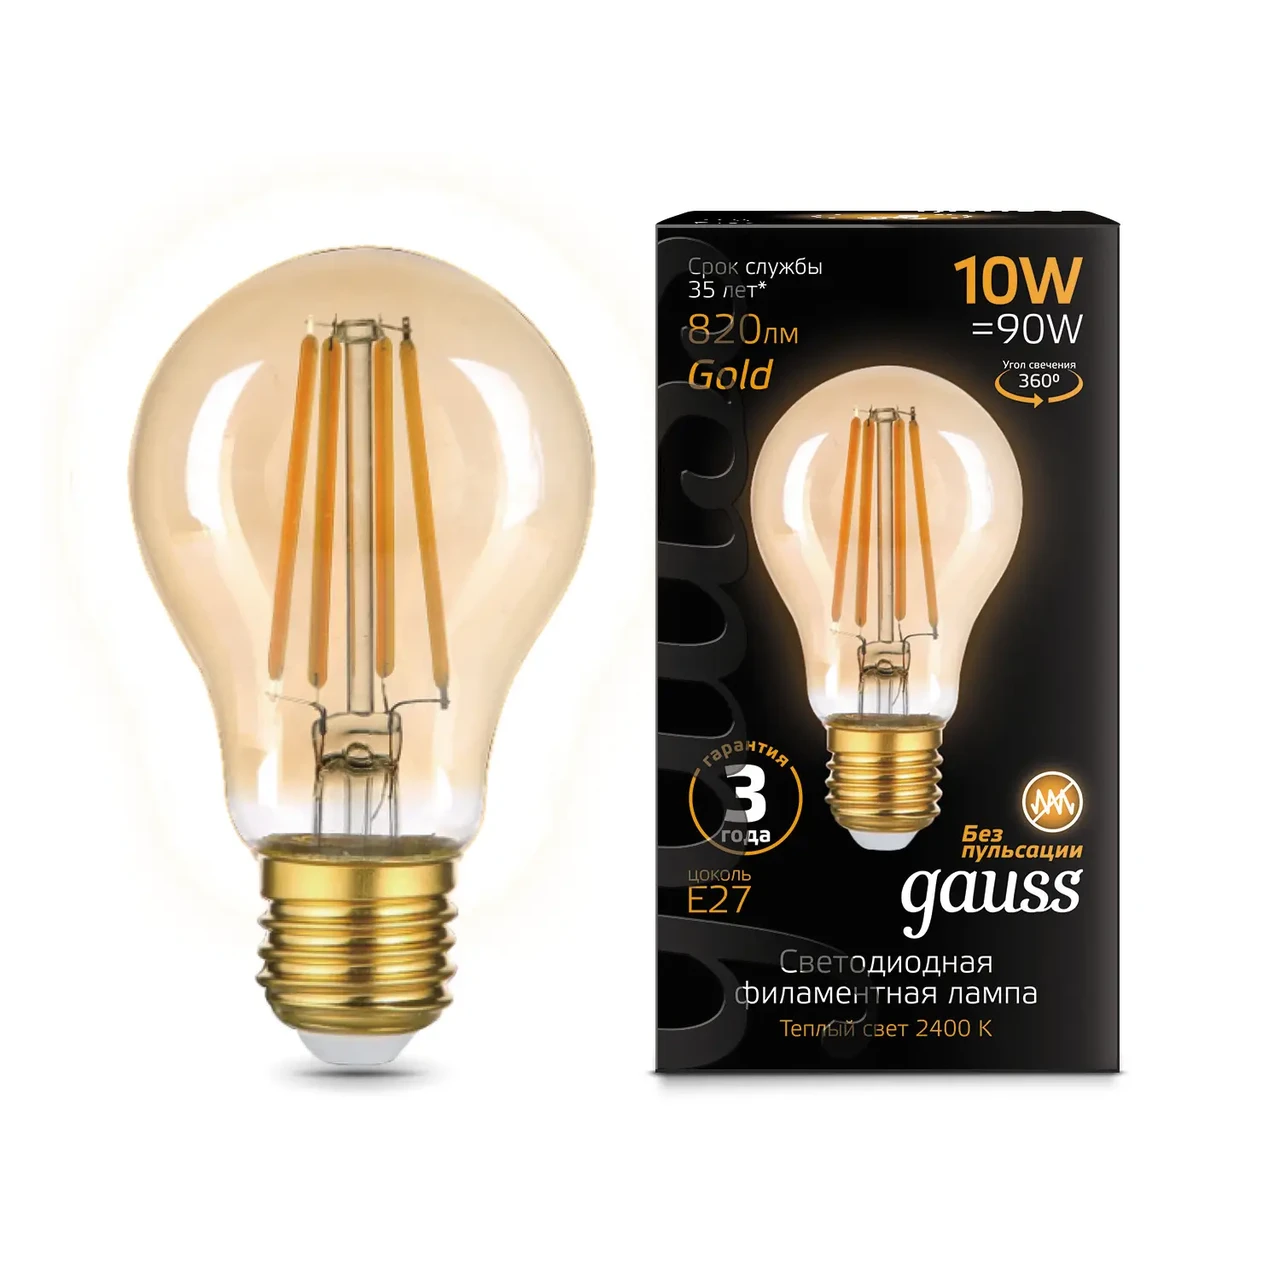 Лампа Gauss Filament А60 10W 820lm 2400К Е27 golden LED 1/10/40, фото 1